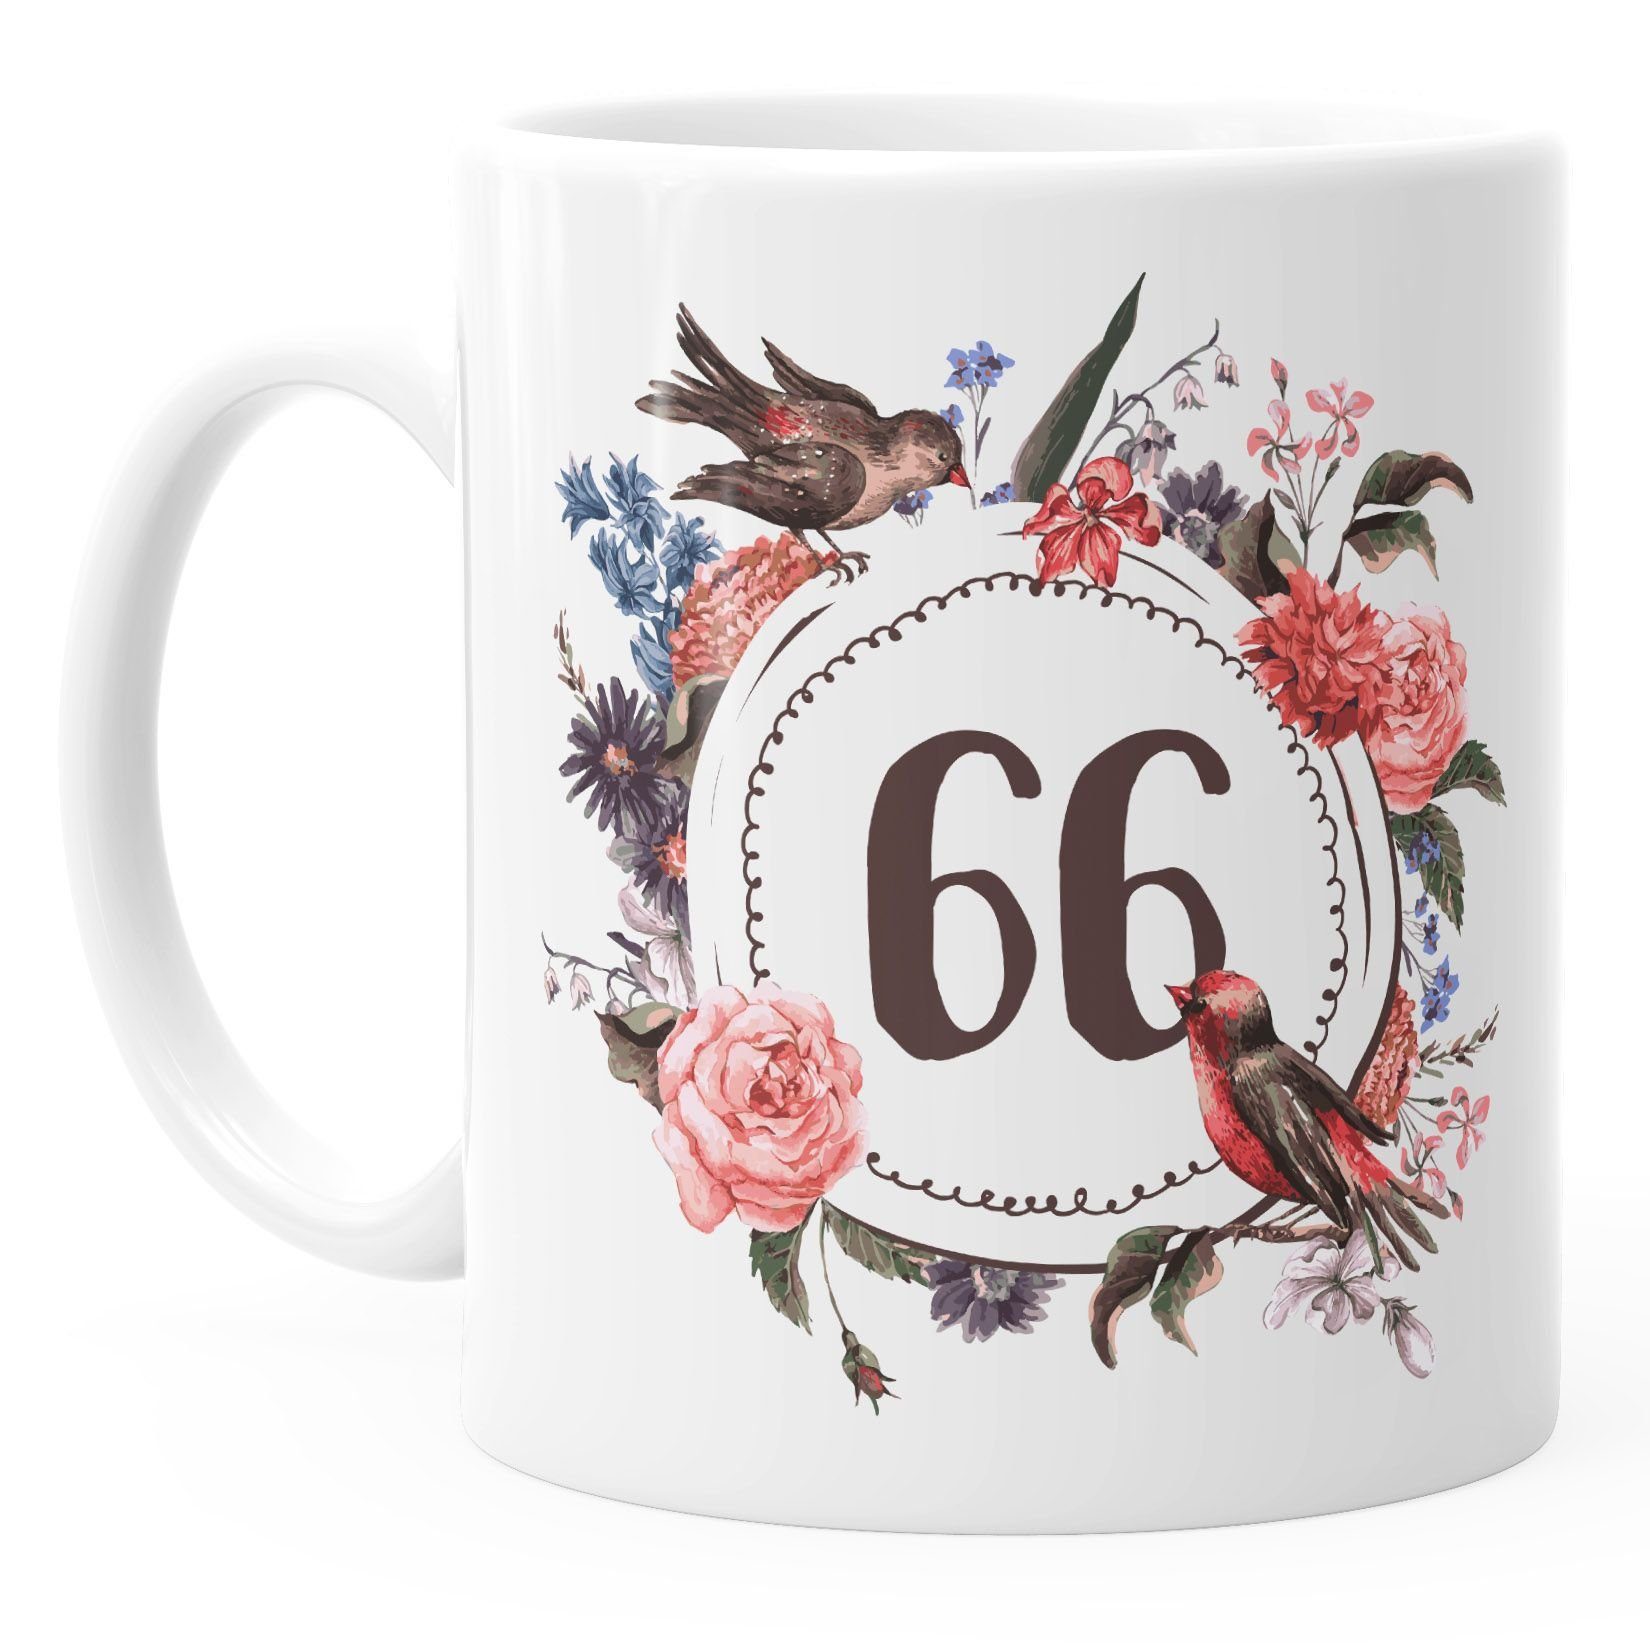 66 Blüten weiß Blumenkranz MoonWorks Kaffee-Tasse MoonWorks®, Geschenk-Tasse Object] Blumen Keramik [object Tasse {[object Object]_ausgeschrieben} Geburtstags-Tasse